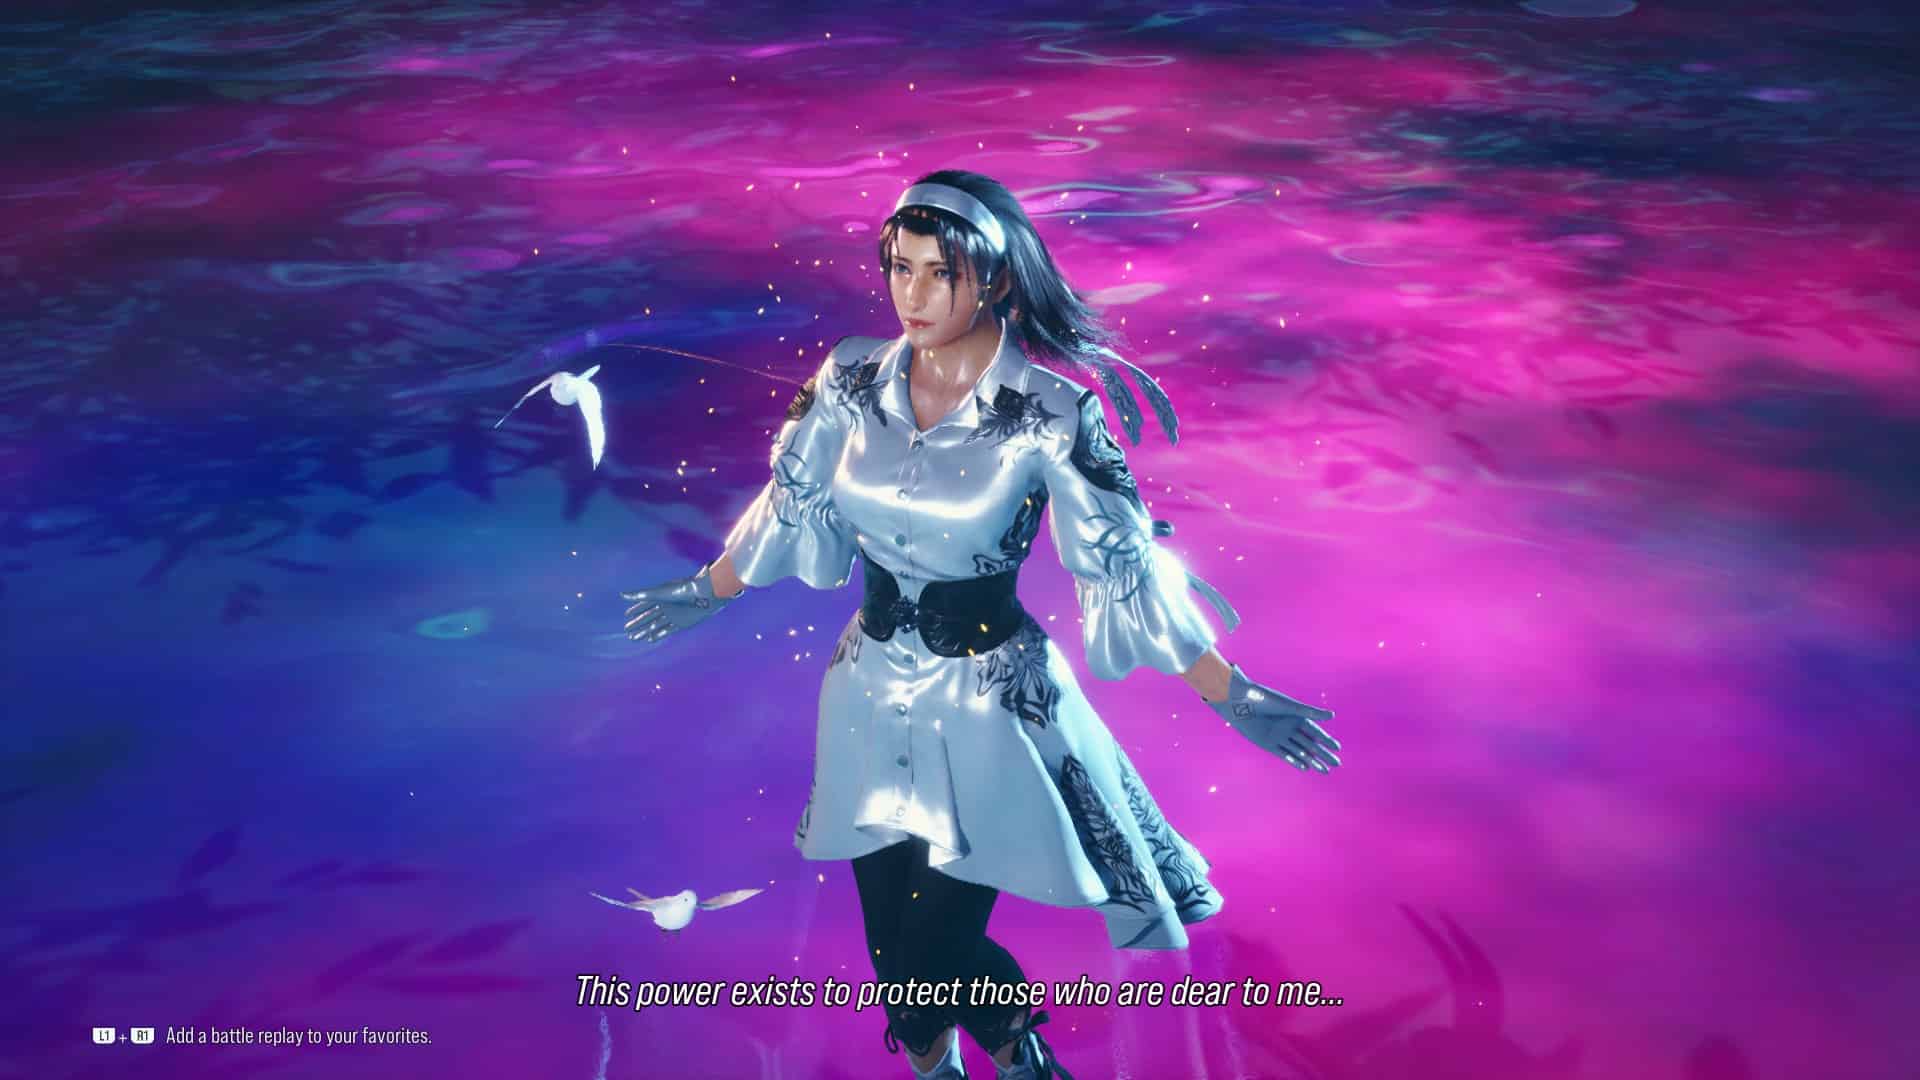 Tekken 8 Jun: Jun standing on blue and purple ground with a white bird flying around her.